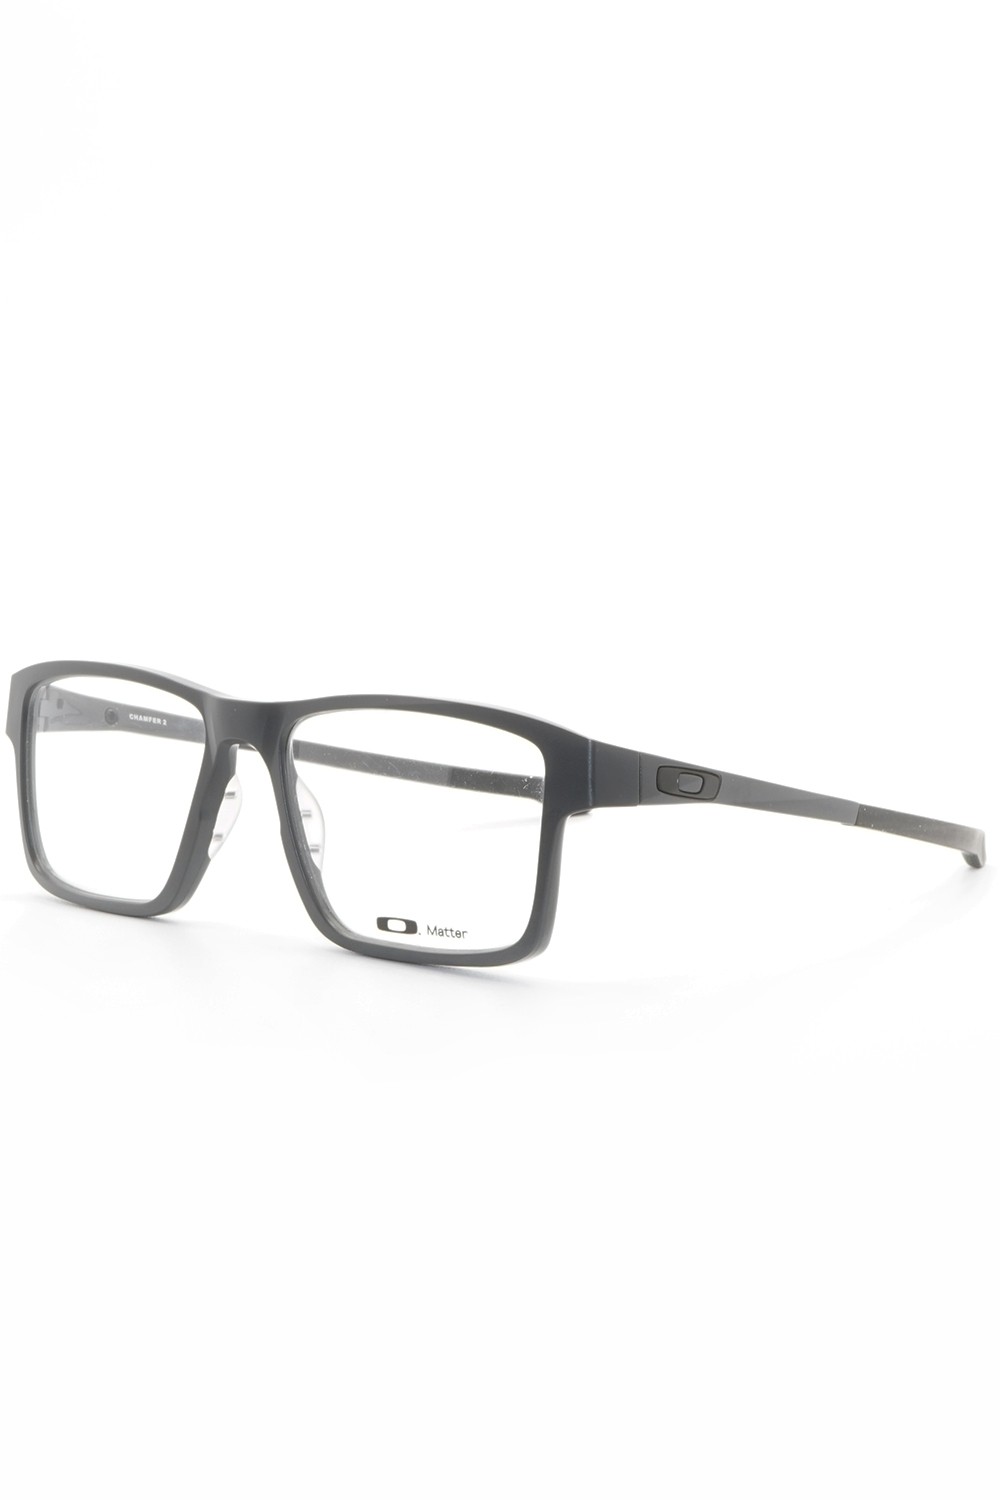 Oakley - Occhiali da vista in celluloide rettangolari per uomo grigio - OX8040